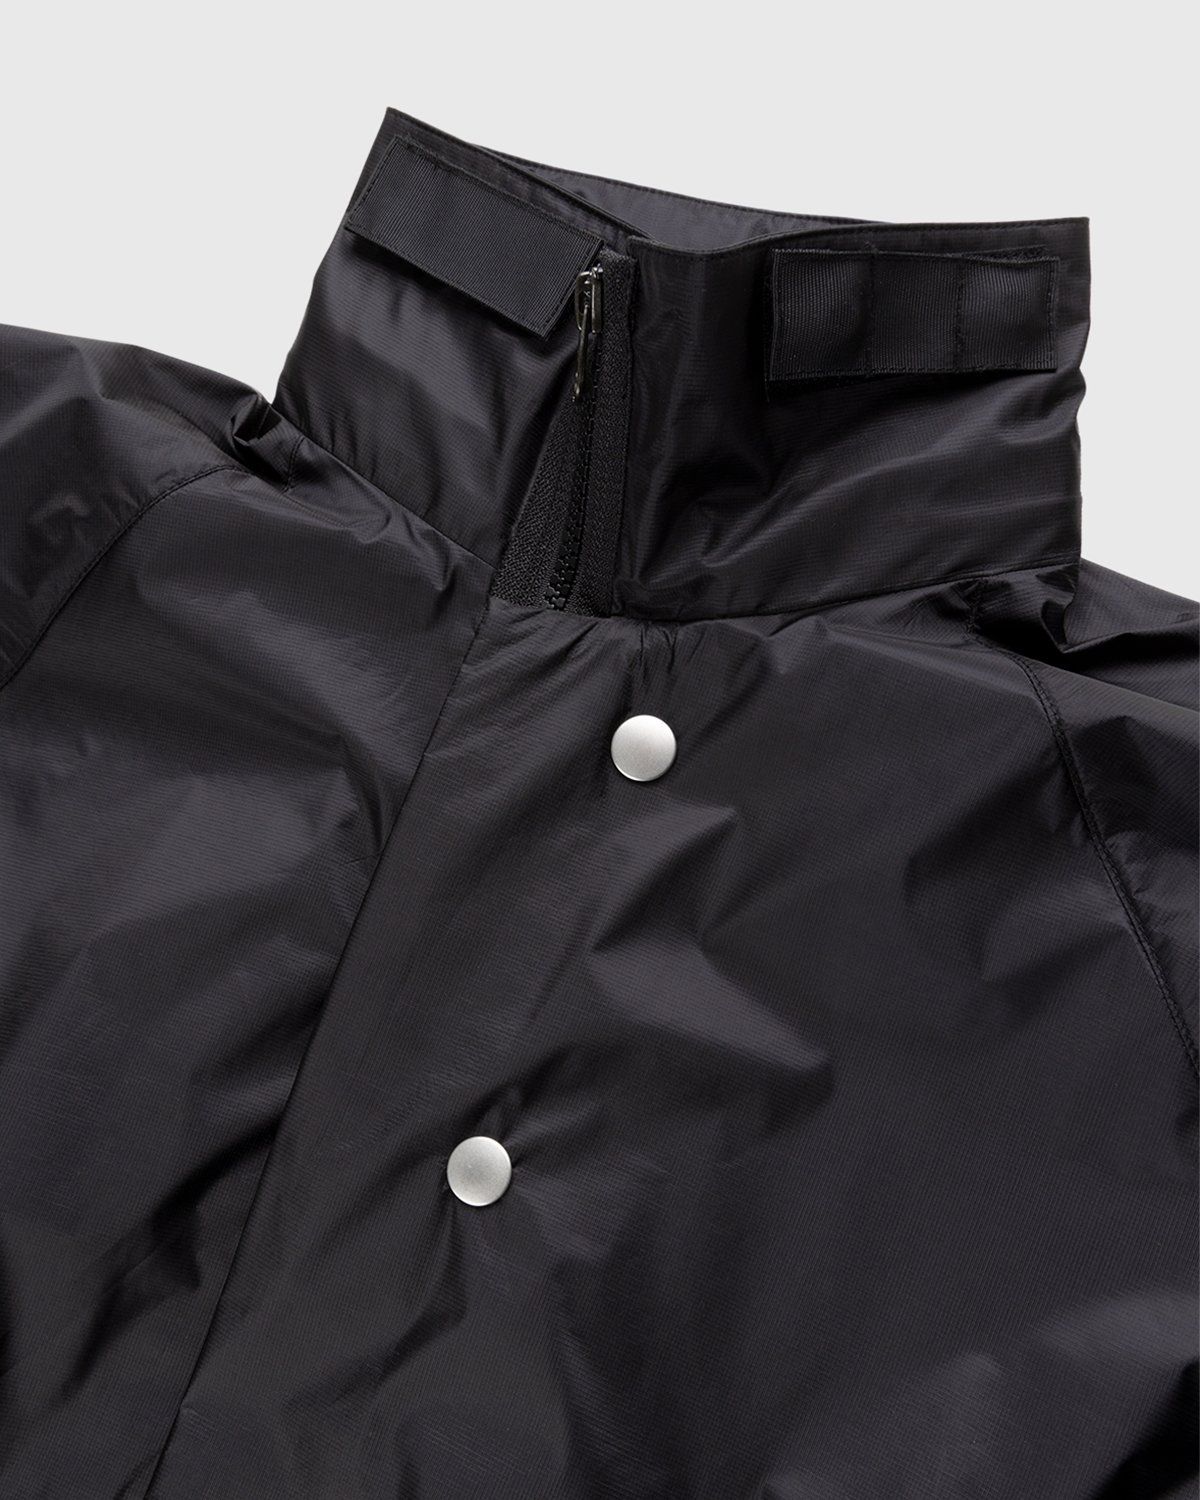 ACRONYM – J95-WS Jacket Black - Jackets - Black - Image 4